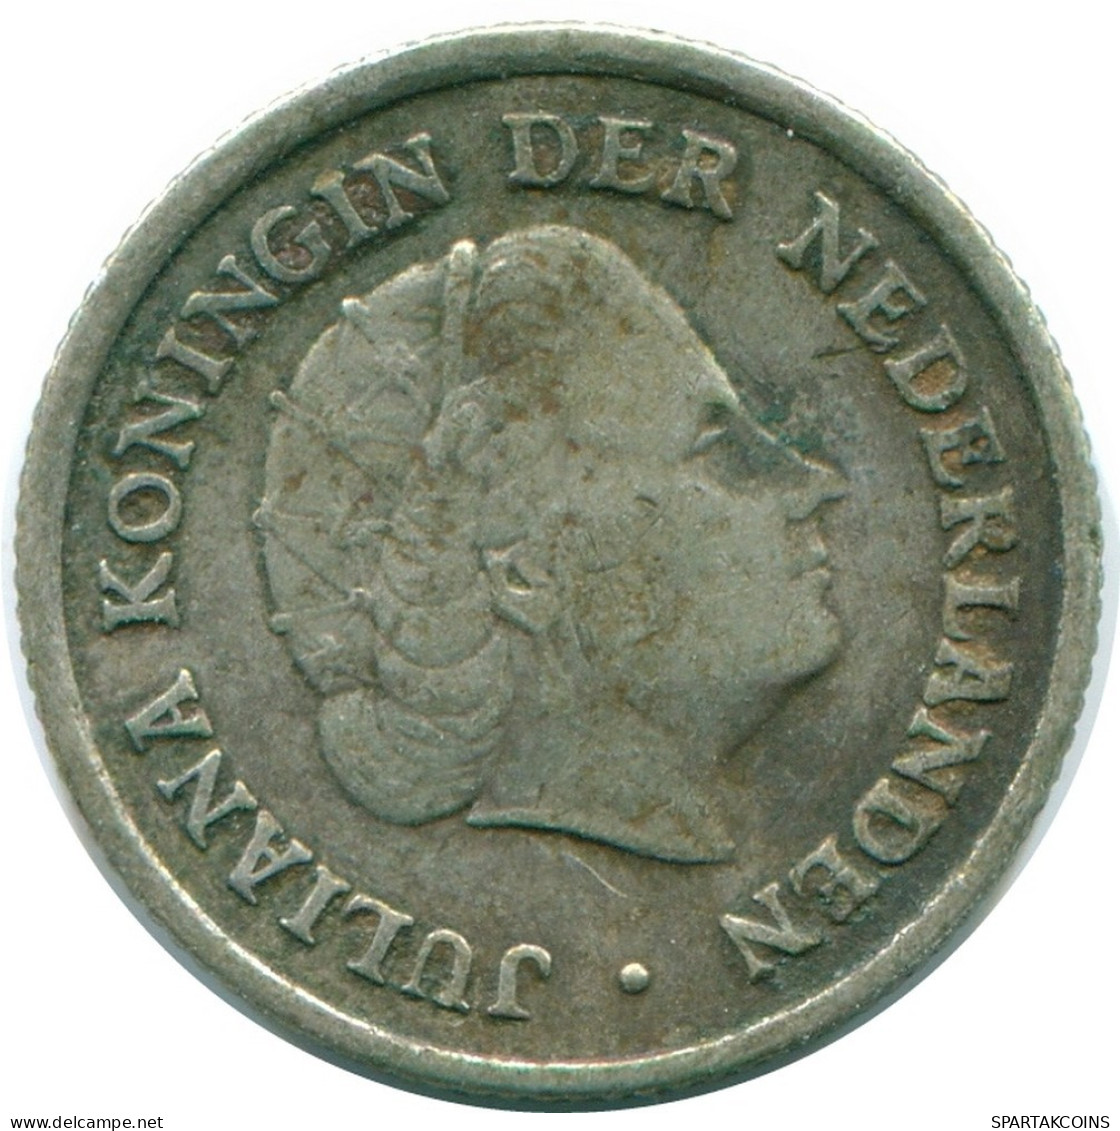 1/10 GULDEN 1957 NIEDERLÄNDISCHE ANTILLEN SILBER Koloniale Münze #NL12164.3.D.A - Niederländische Antillen